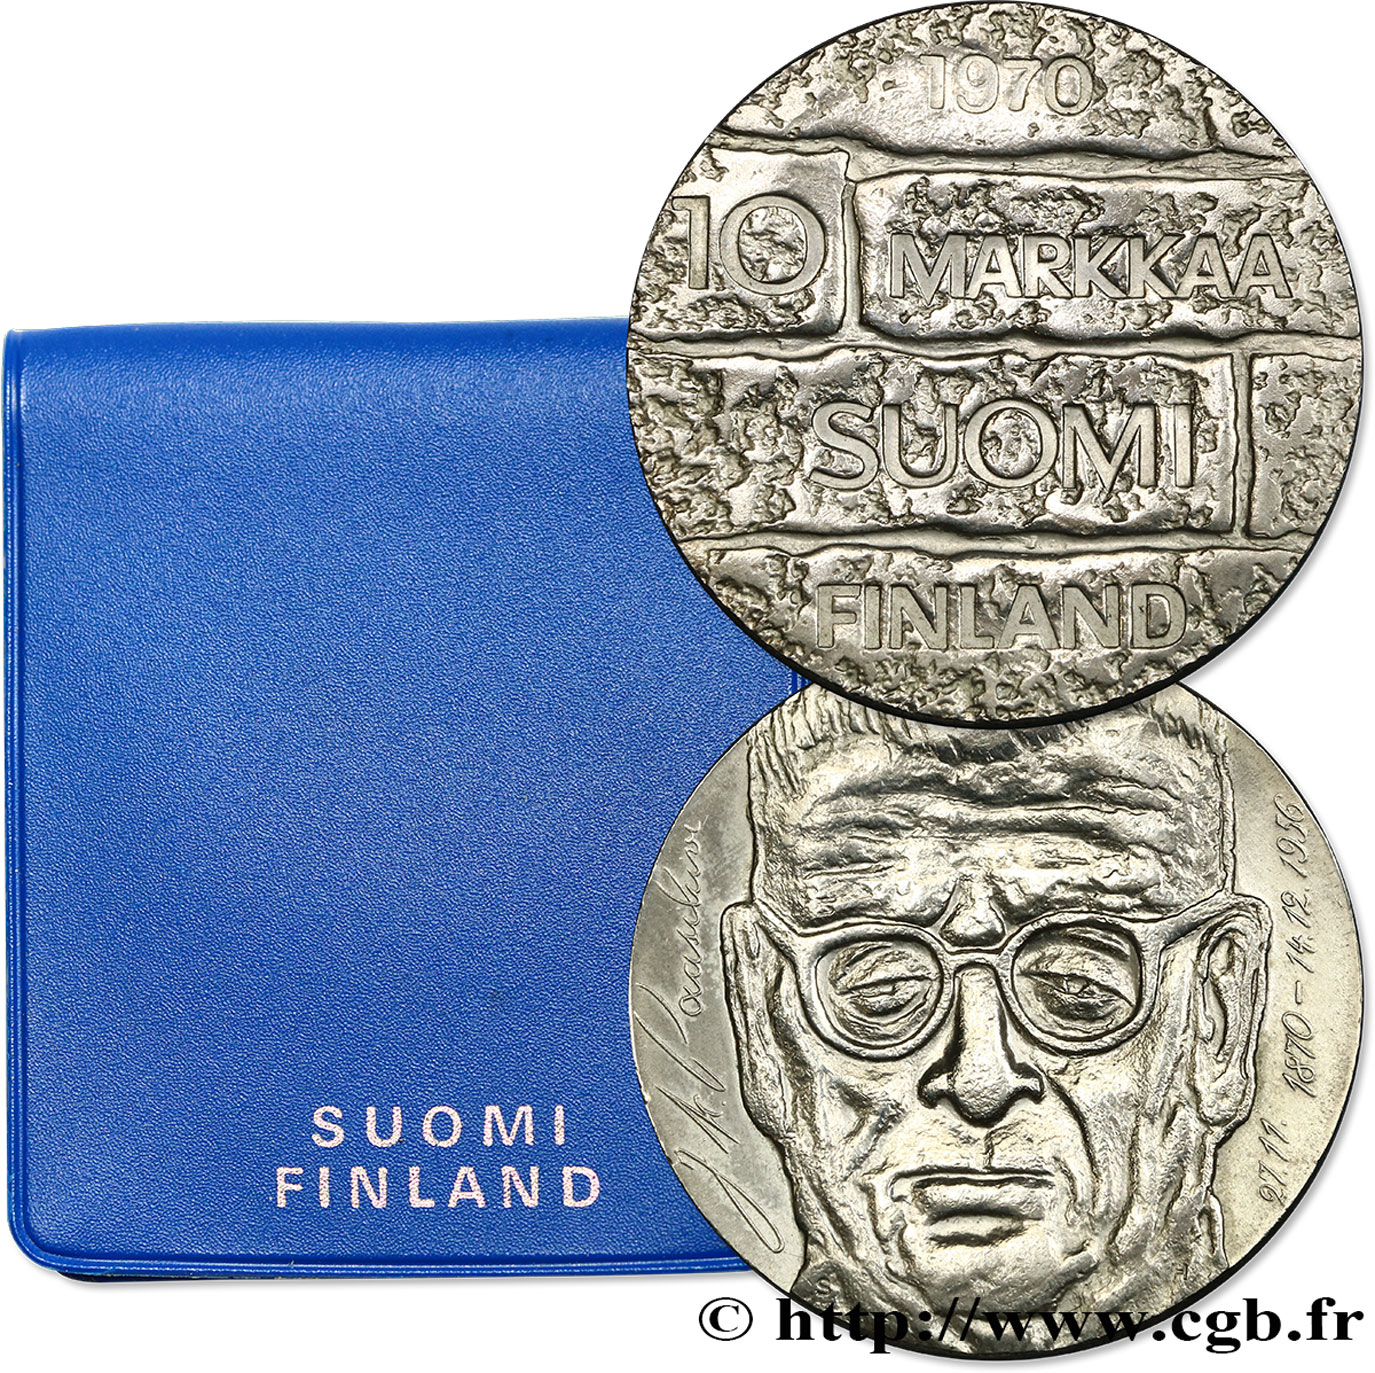 FINLANDIA 10 Markkaa centenaire naissance du président Paasikivi 1970  SPL 